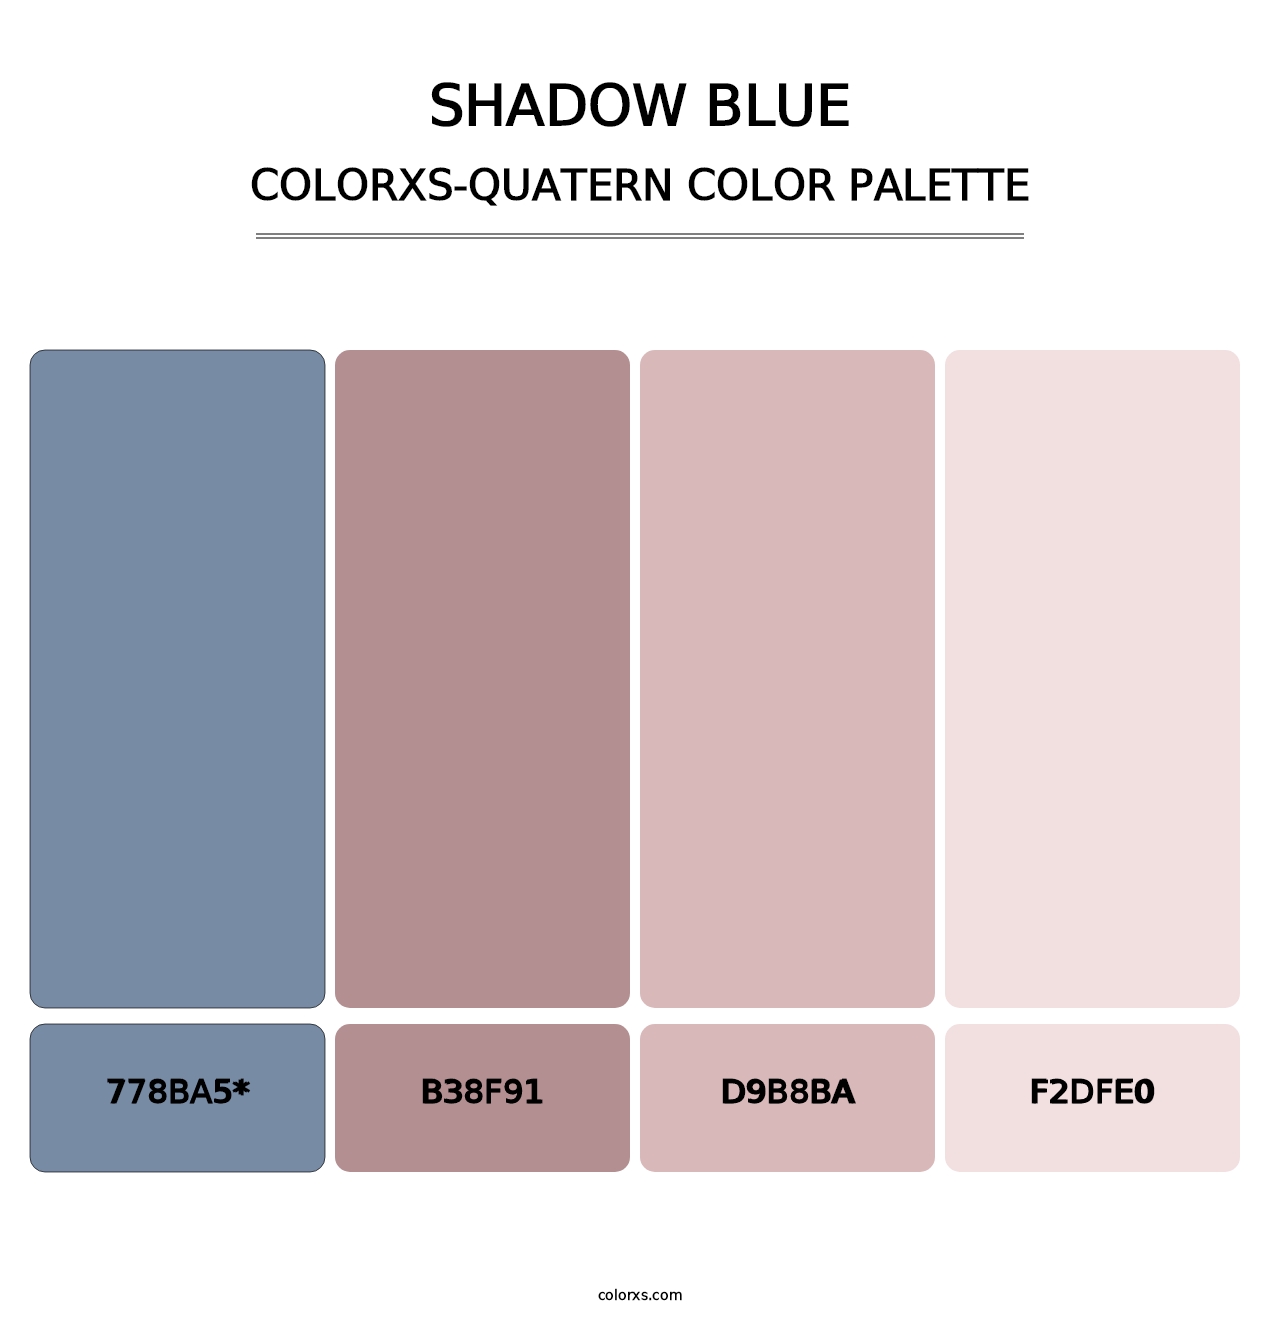 Shadow Blue - Colorxs Quatern Palette